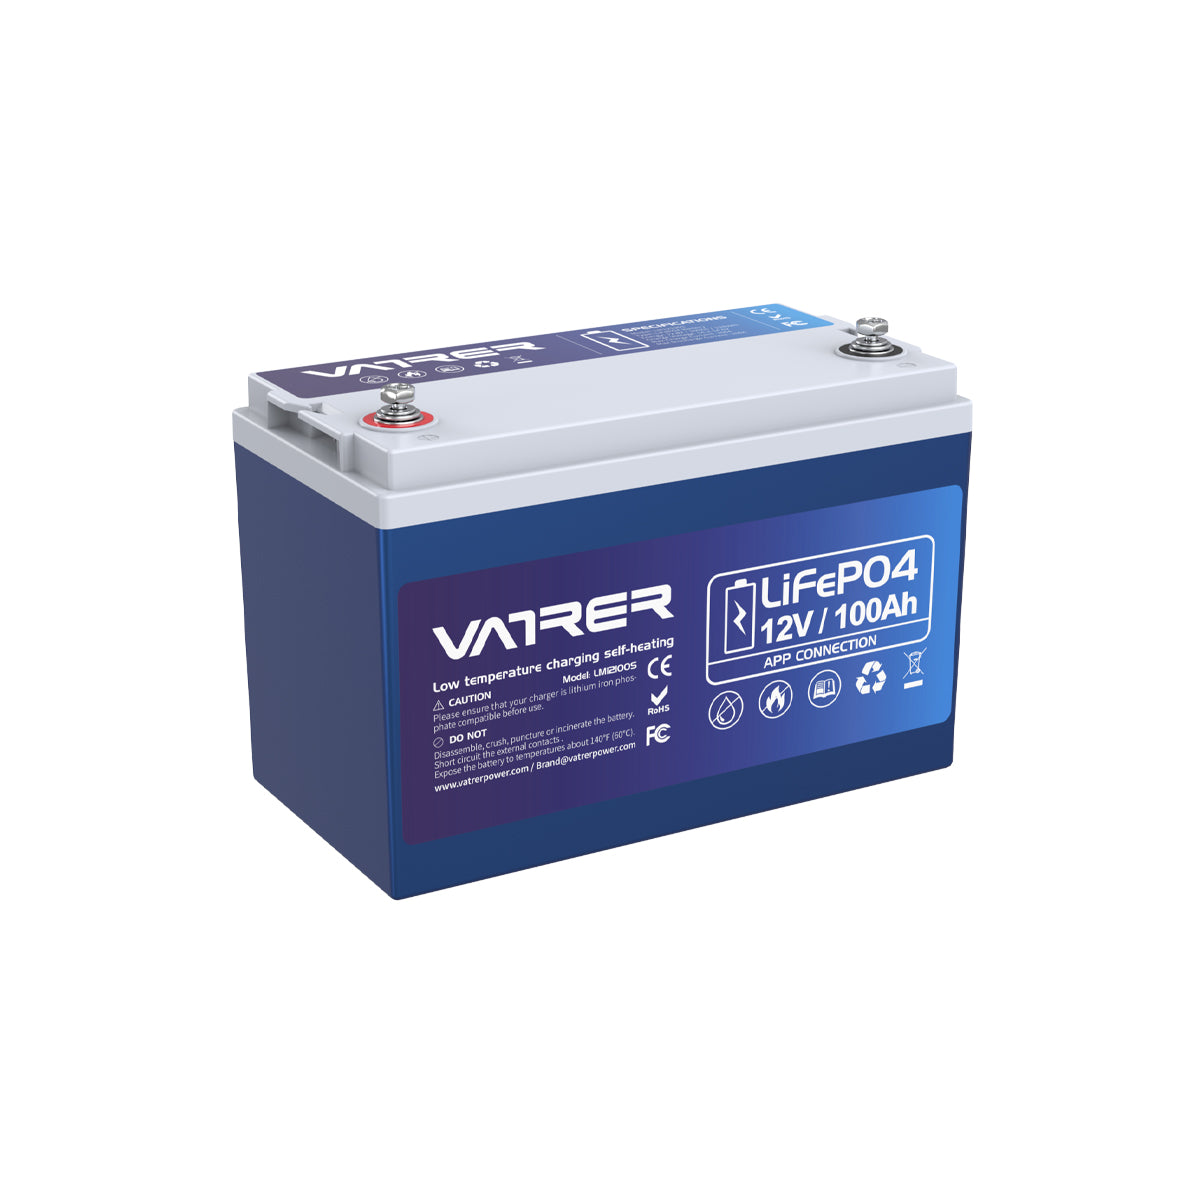 Vatrer 12V 100Ah heated lithium battery 9